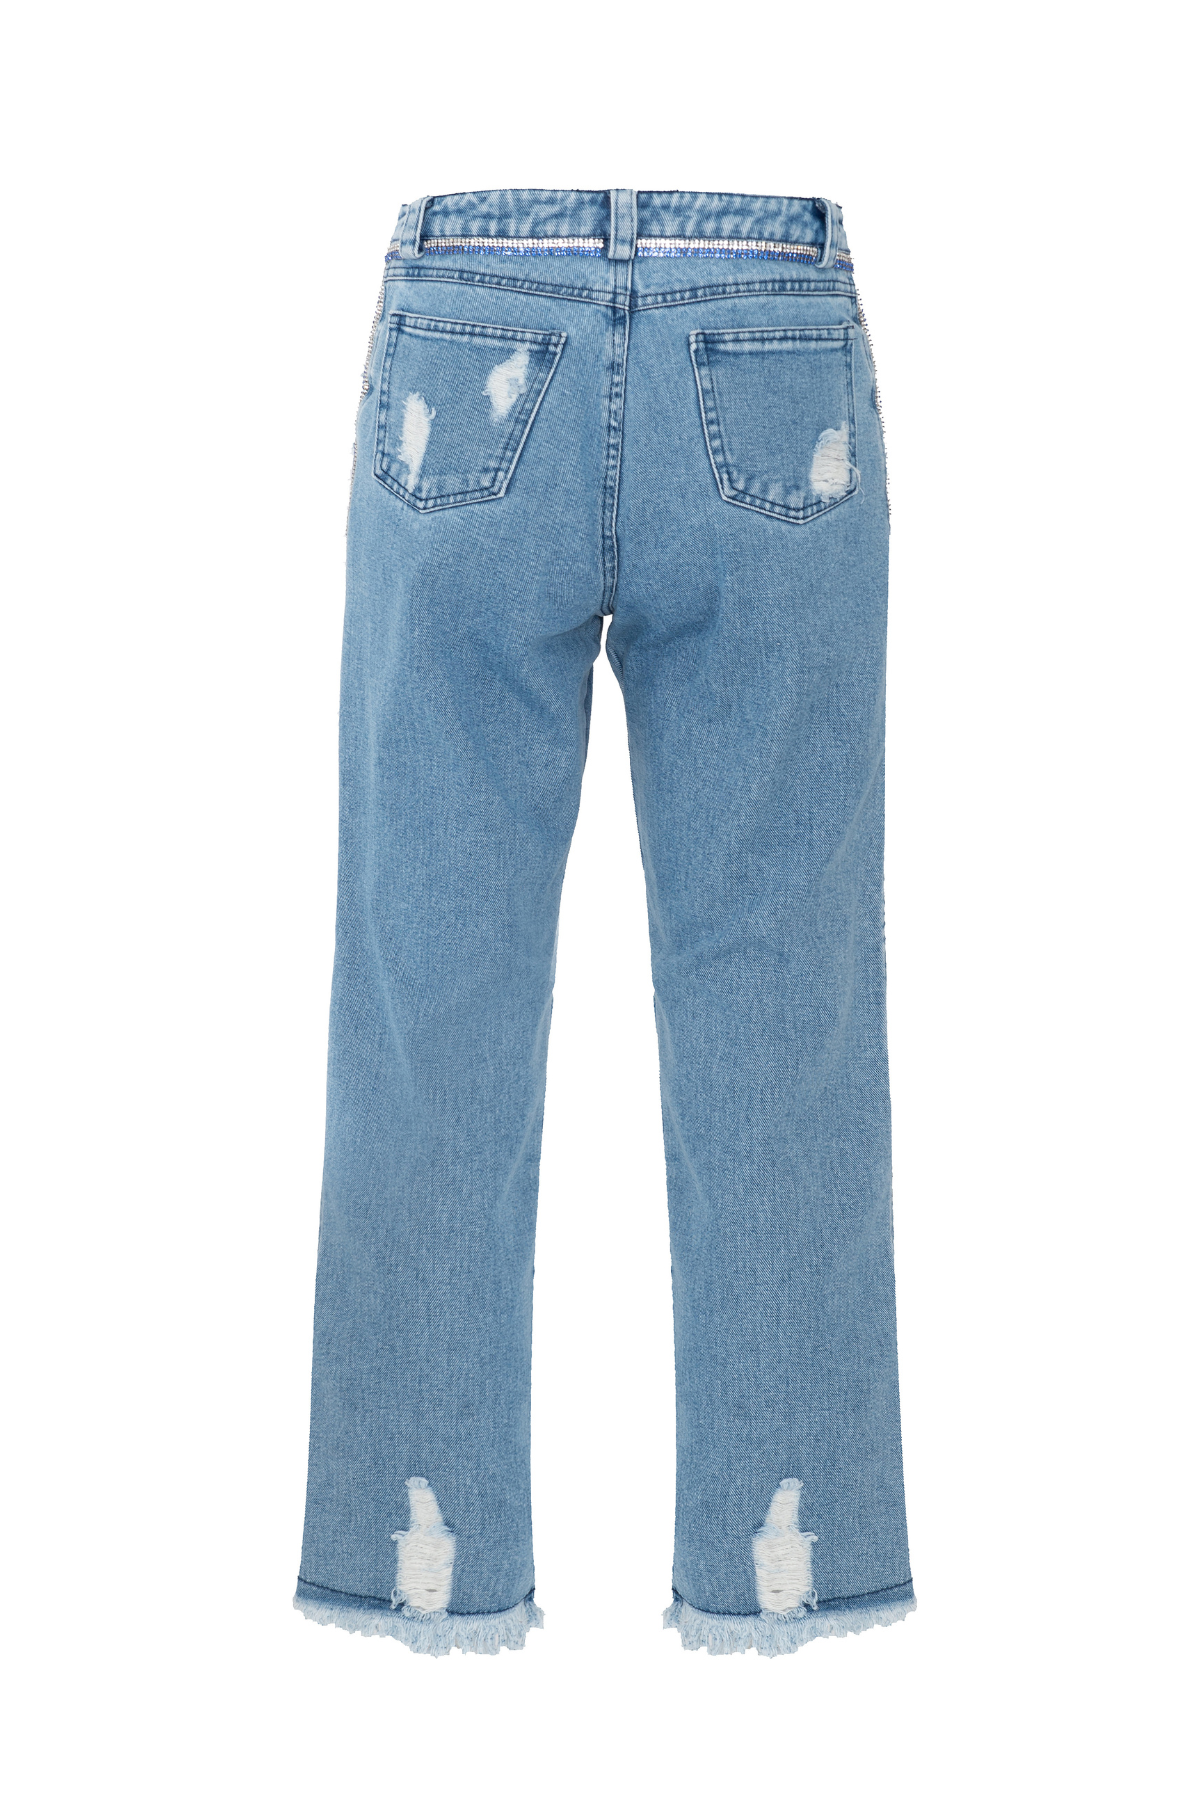 Calça Jeans Cós Alto Bordado Strass